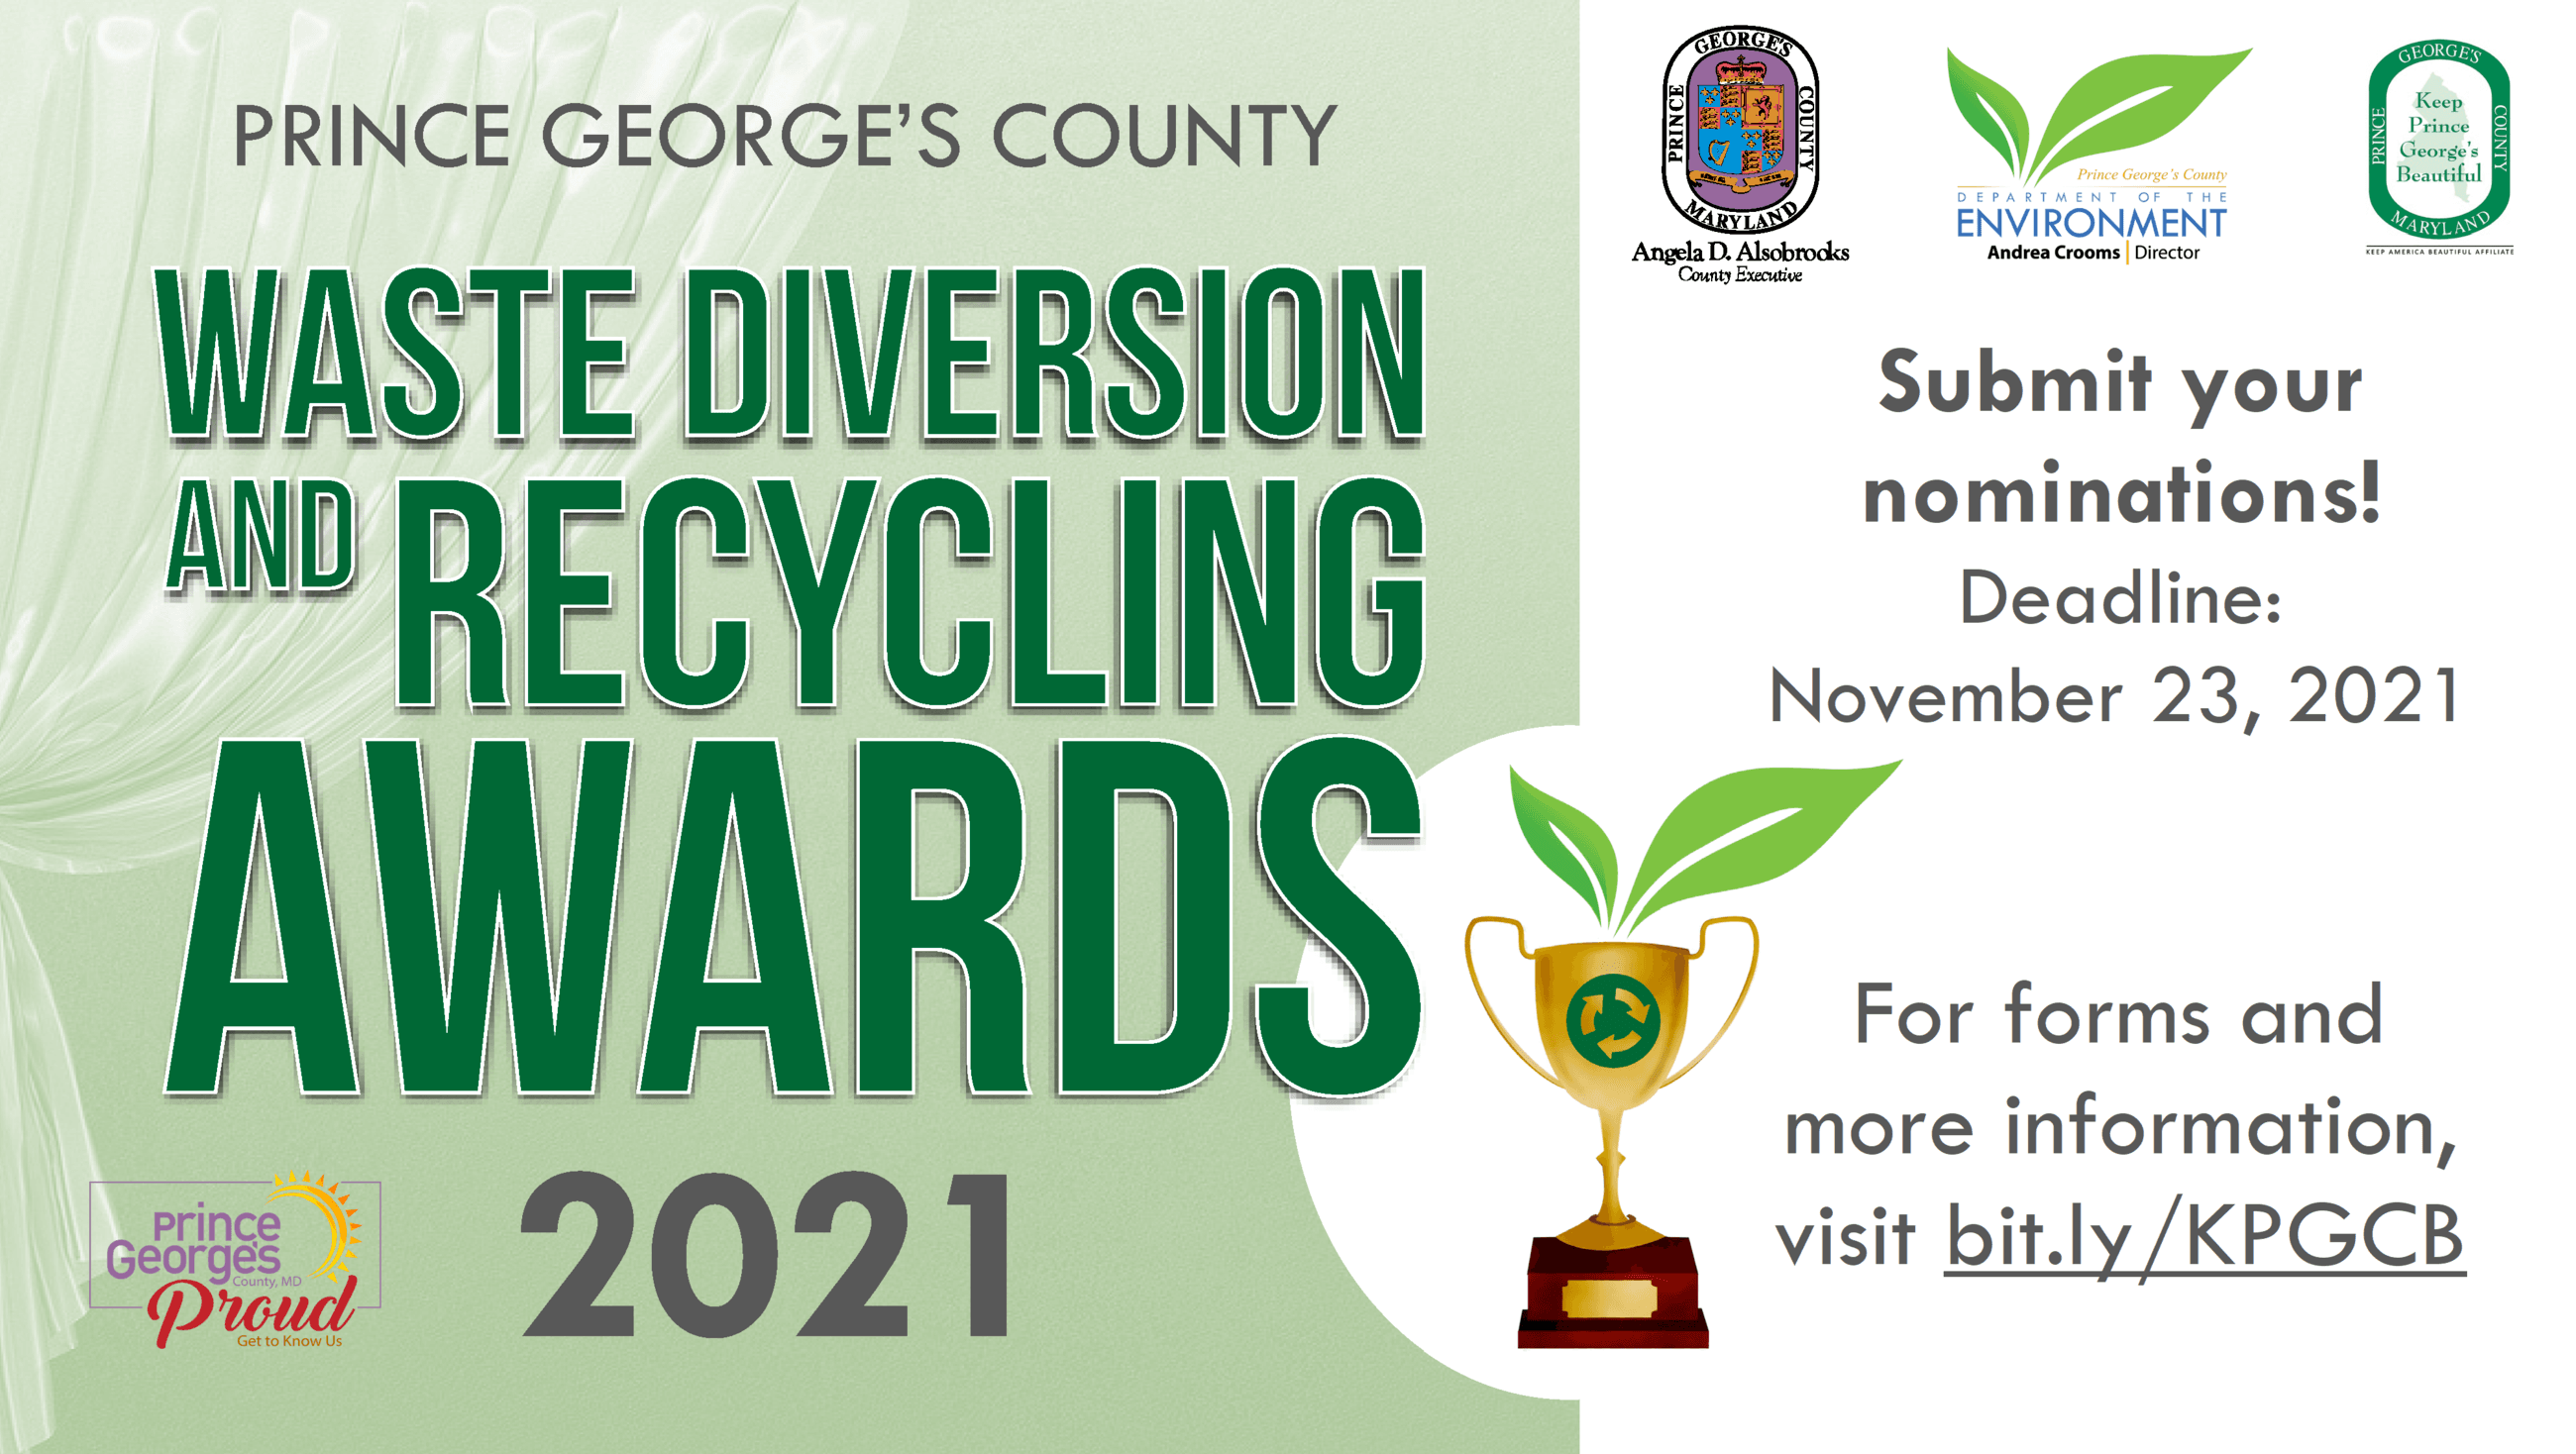 Waste Diversion Awards 2021 website